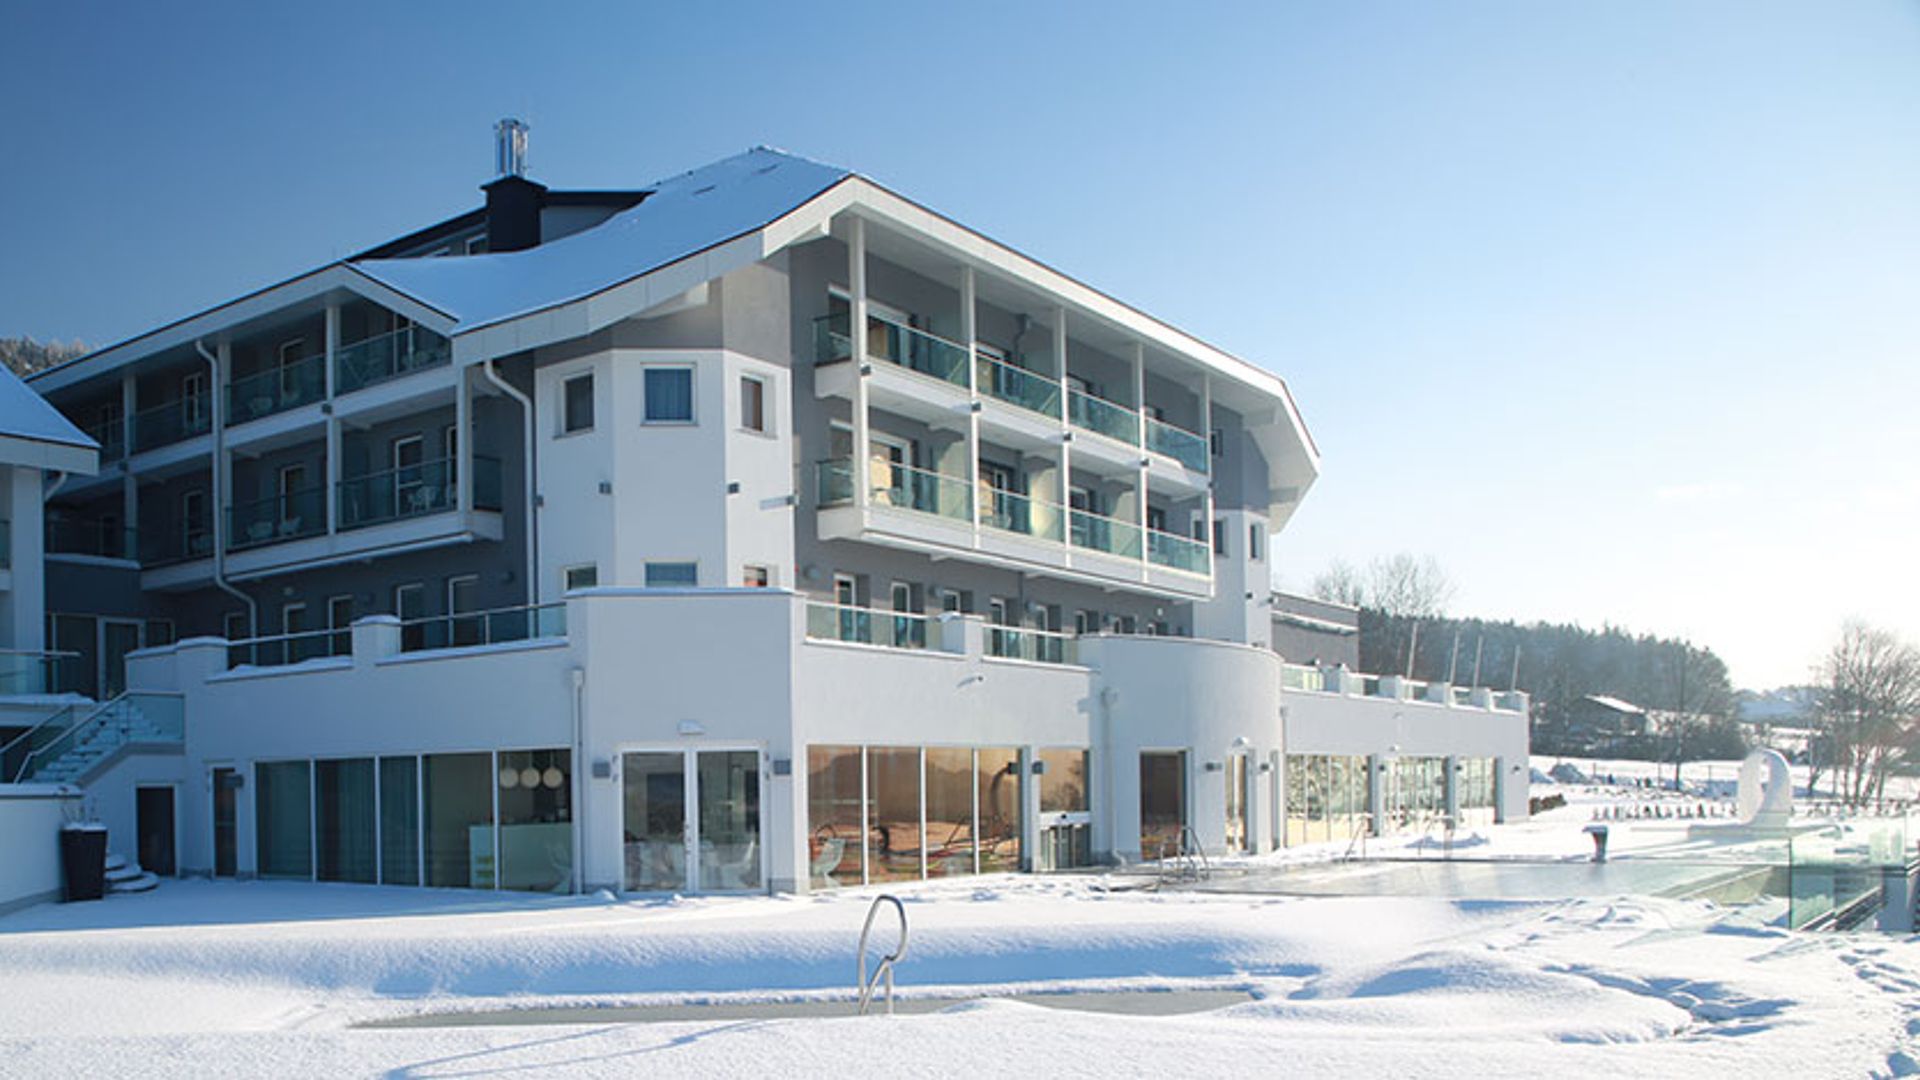 Winterurlaub mit der Familie im Familotel AIGO Familien- & Sportresort | Familotel Böhmerwald genießen